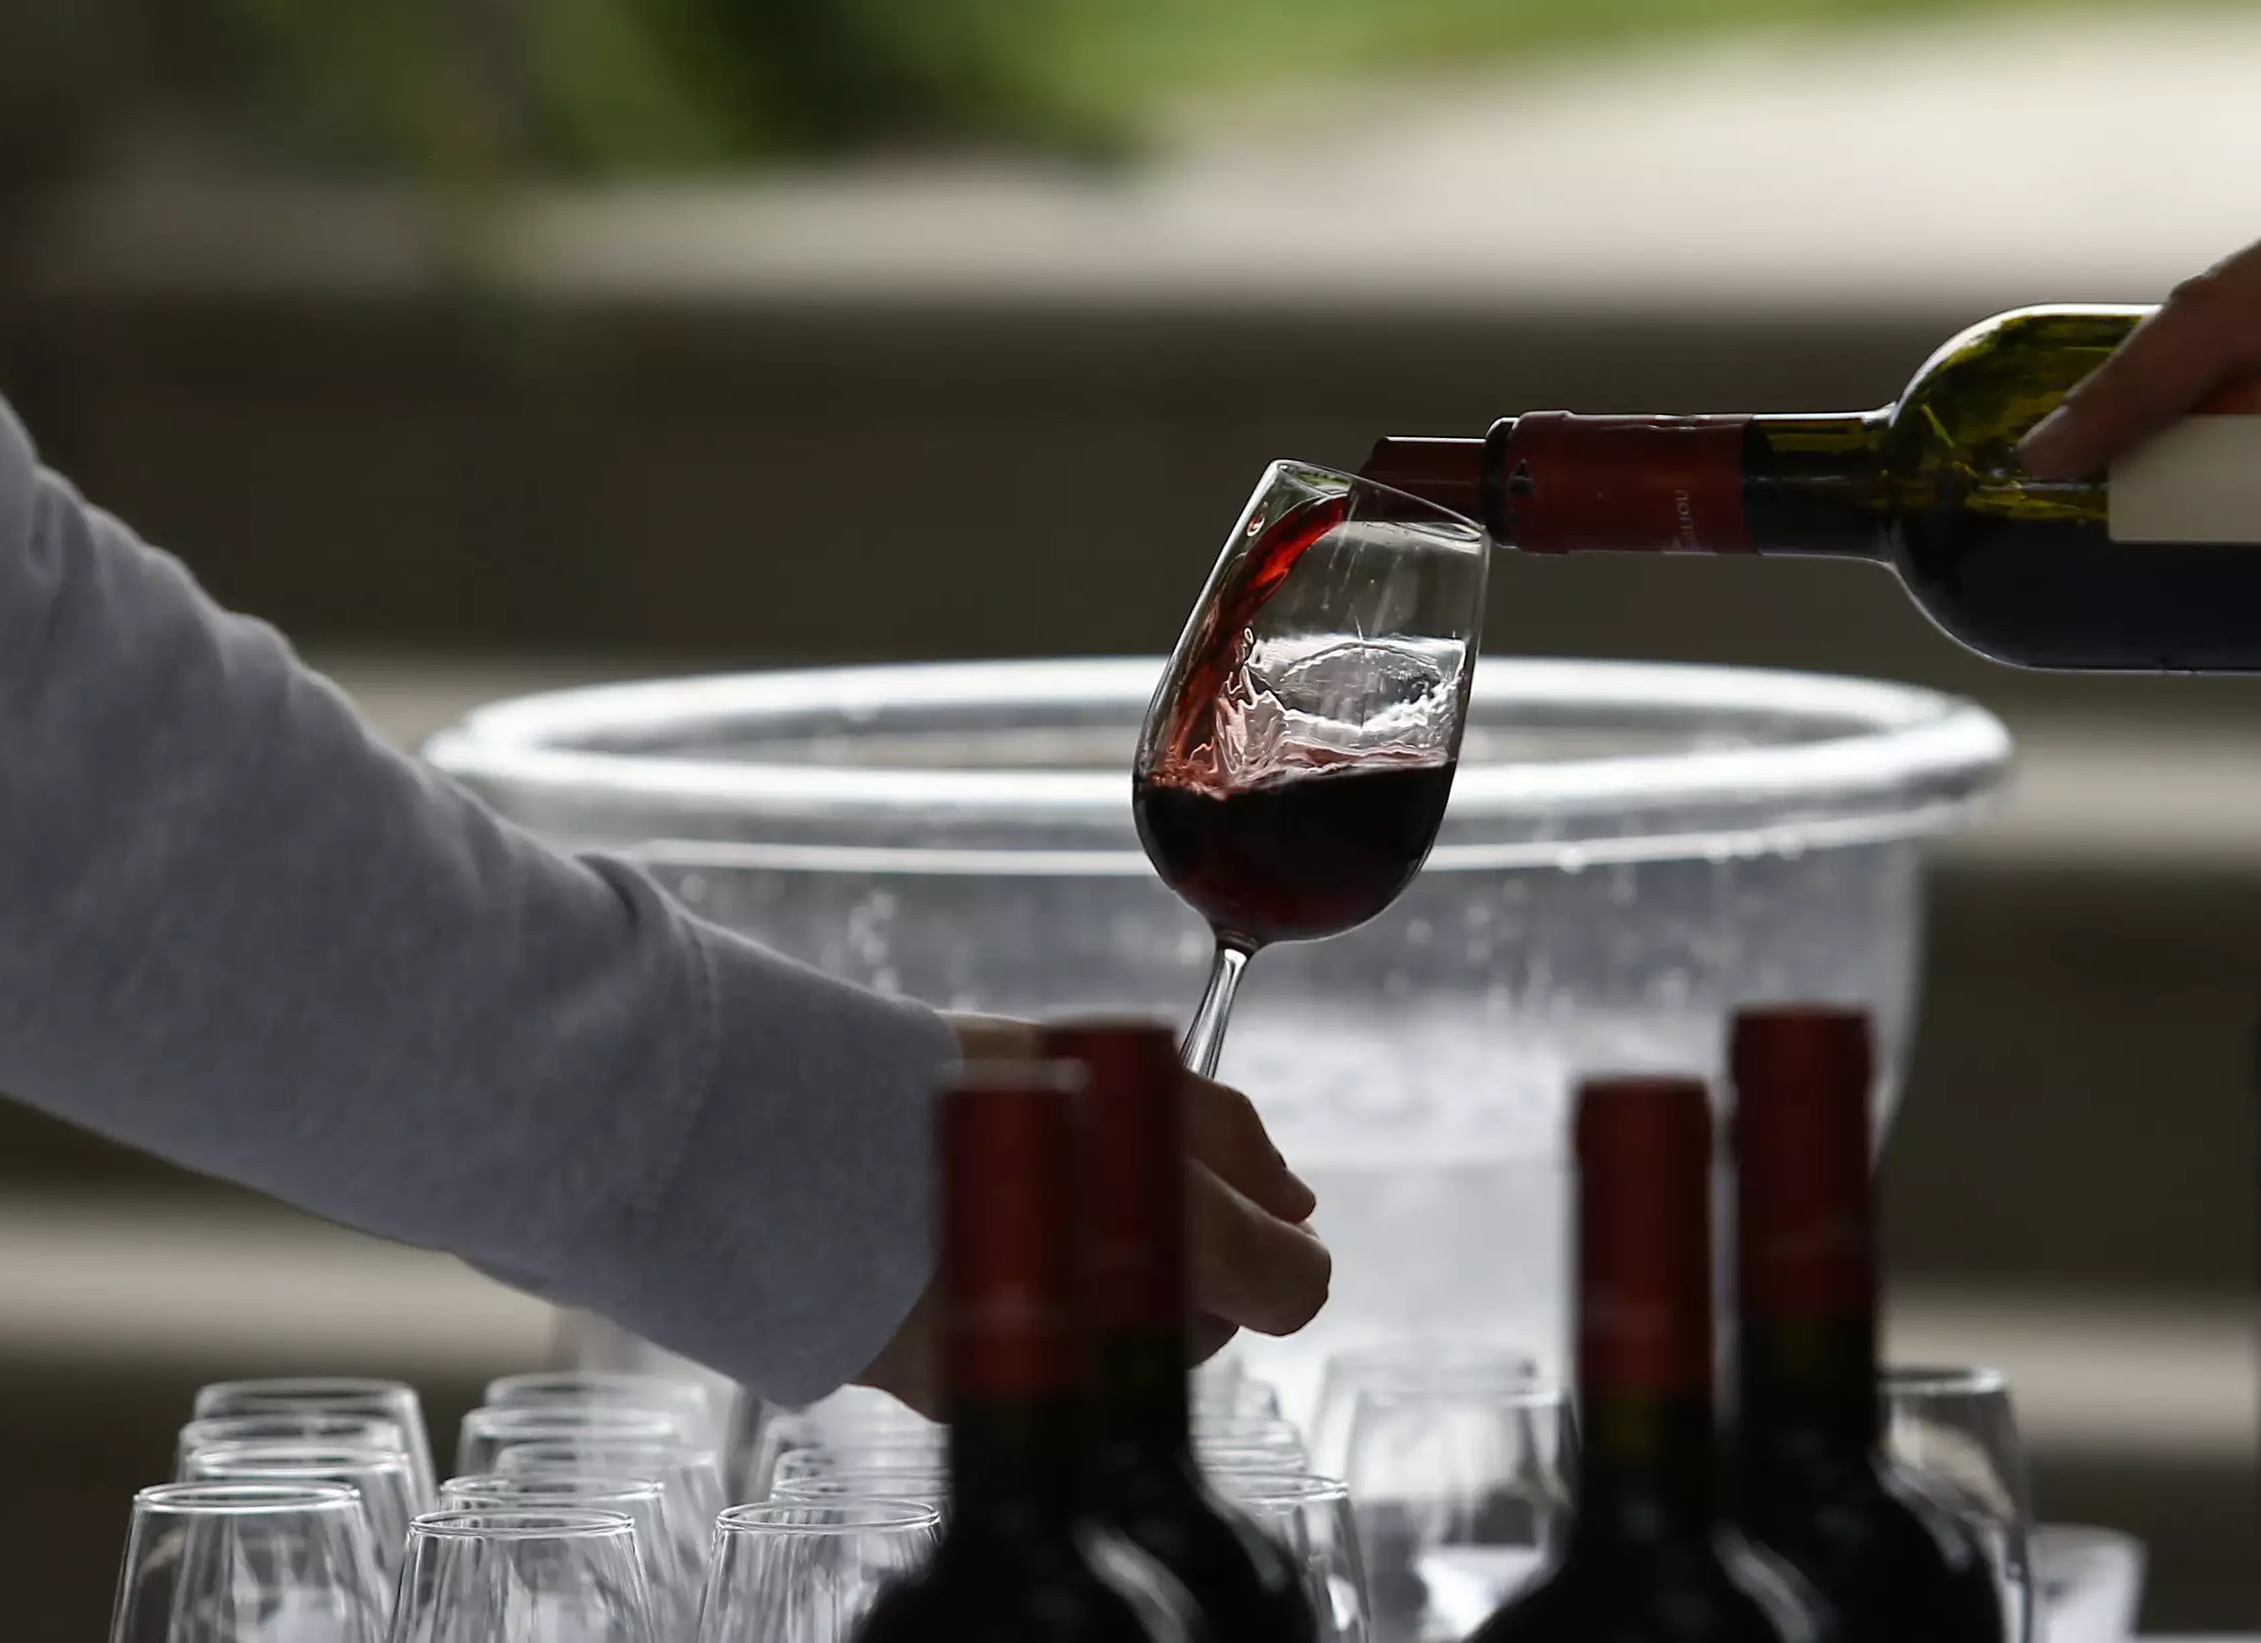 Οργή στην Ιταλία για την απόφαση της Ιρλανδίας να βάζει προειδοποιητικές ετικέτες για την υγεία στα κρασιά